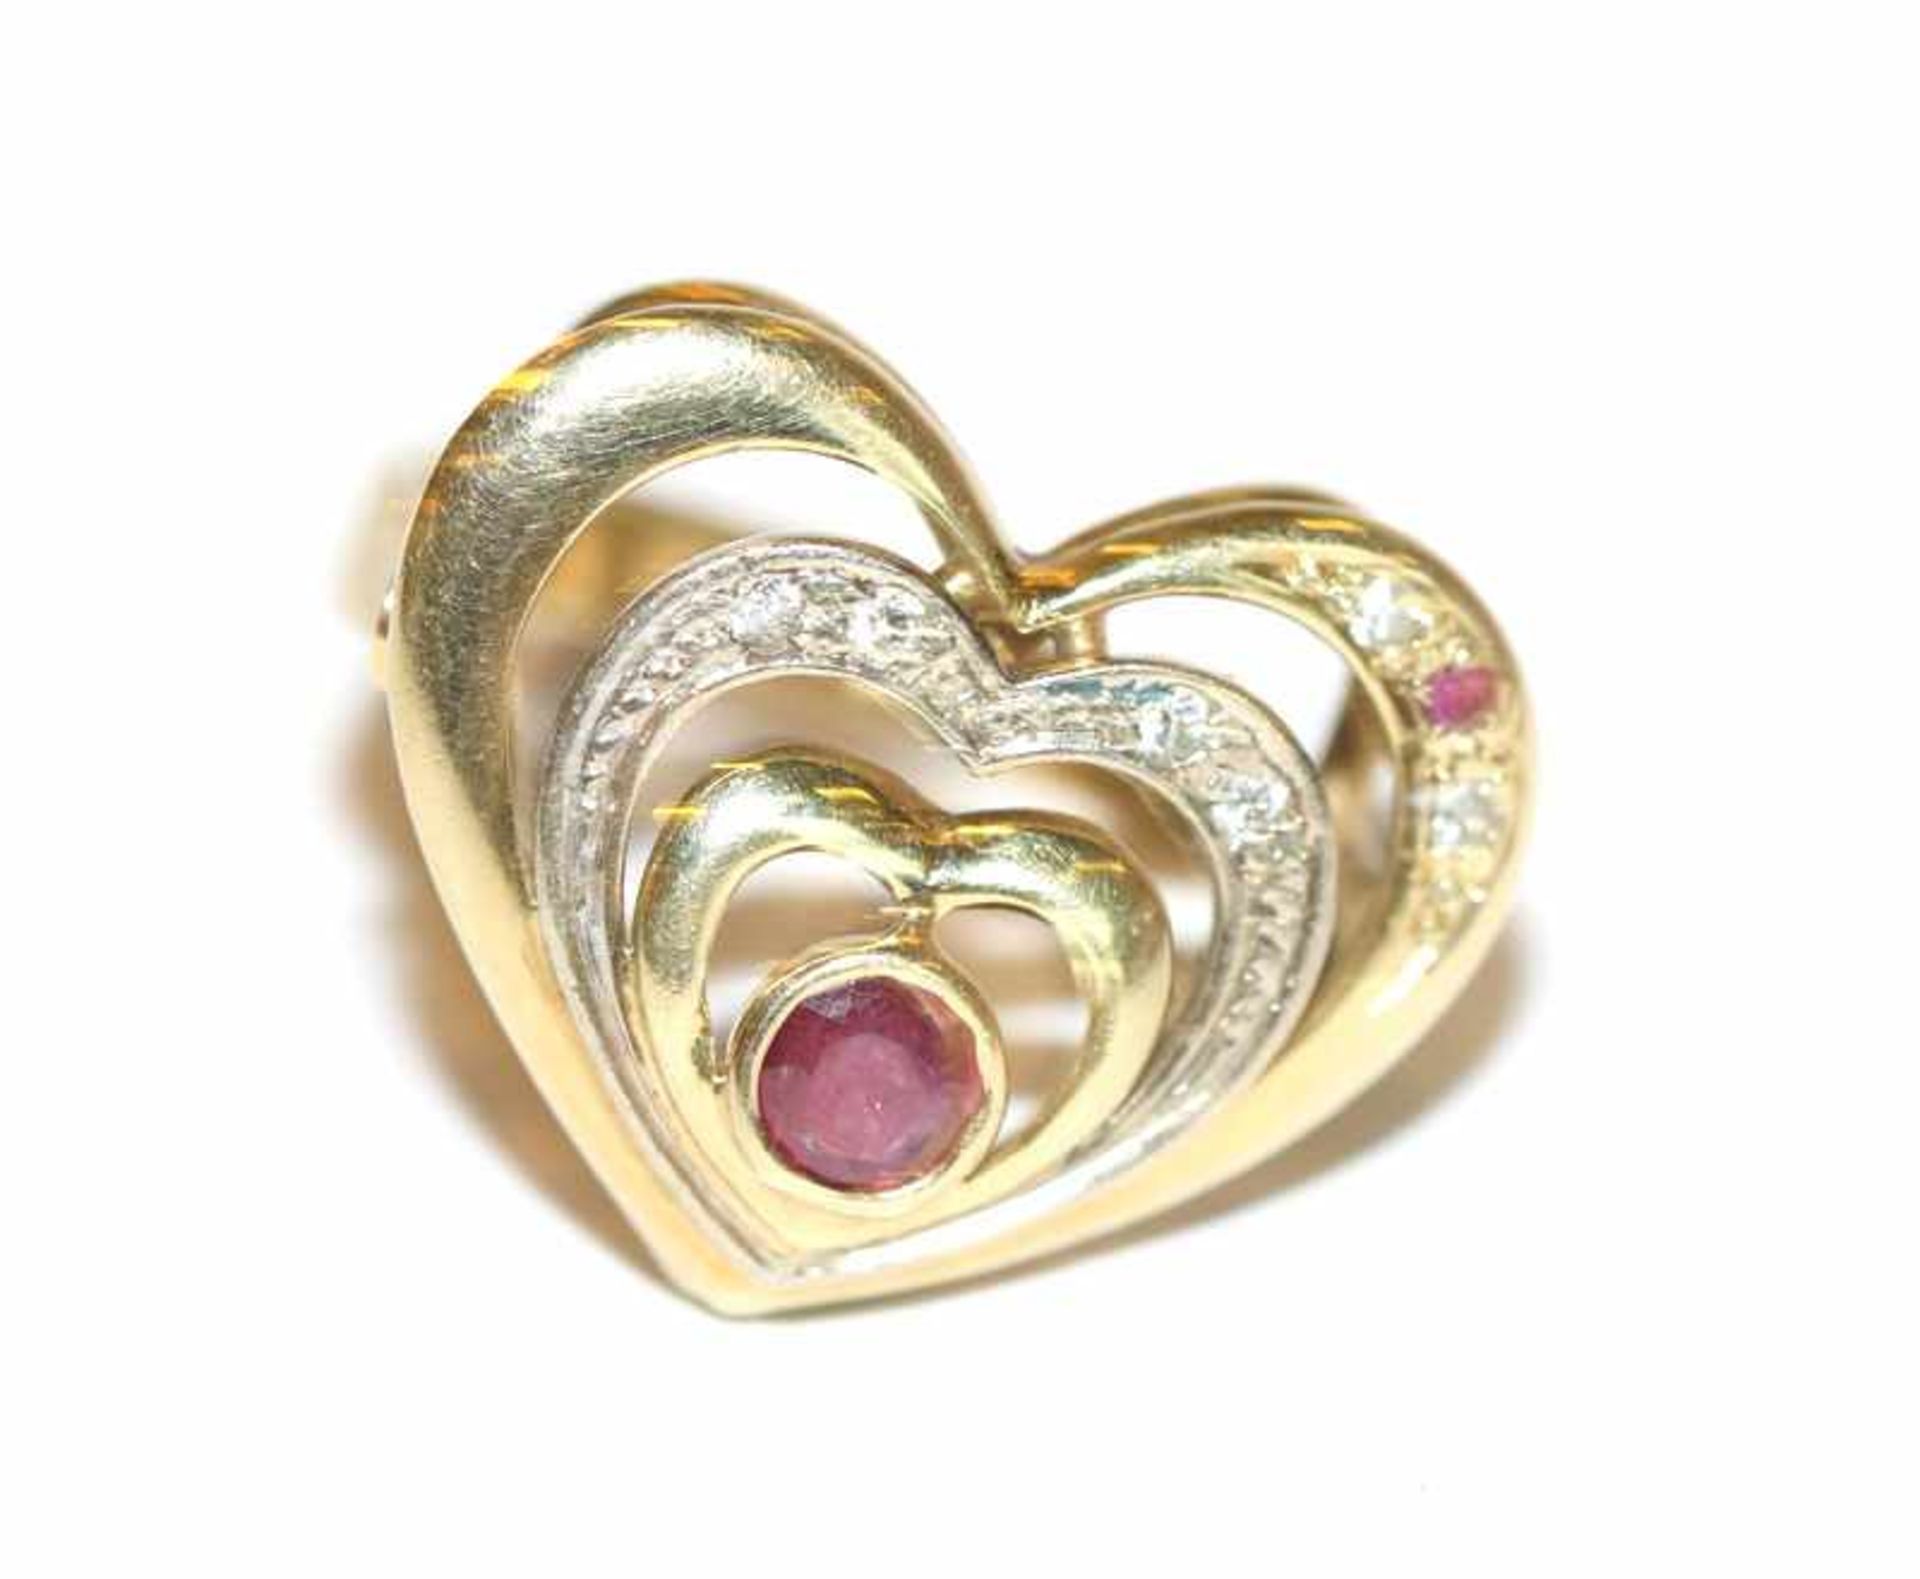 14 k Gelbgold Ring in Herzform mit Rubin und Diamanten, ein Stein fehlt, Gr. 46, 3,4 gr.